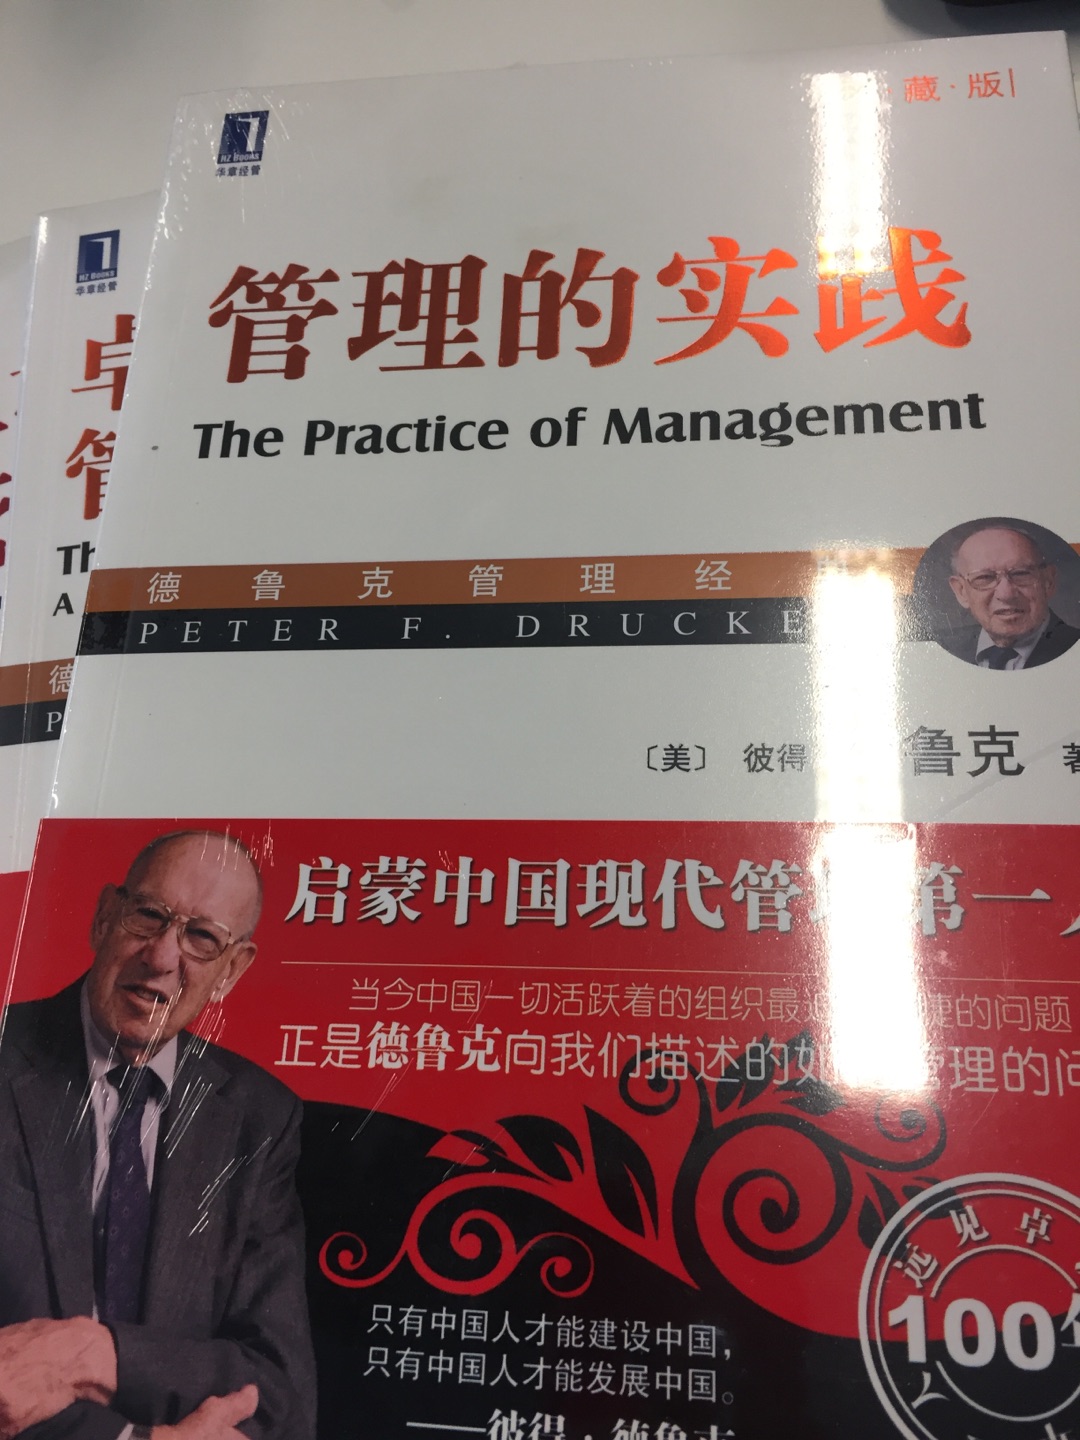 特别好的一本书，经典的德鲁克书籍，本书为德鲁克老先生生前撰写的经典书籍之一，如果只读一本管理书籍，就读《管理的实践》！现代管理学大厦的根基管理学诞生的标志，当今中国一代活跃着的组织最近的眉睫的问题，正是德鲁克向我们描述的如何管理的问题。 书籍购买有优惠，性价比高，快递有保障，很不错。